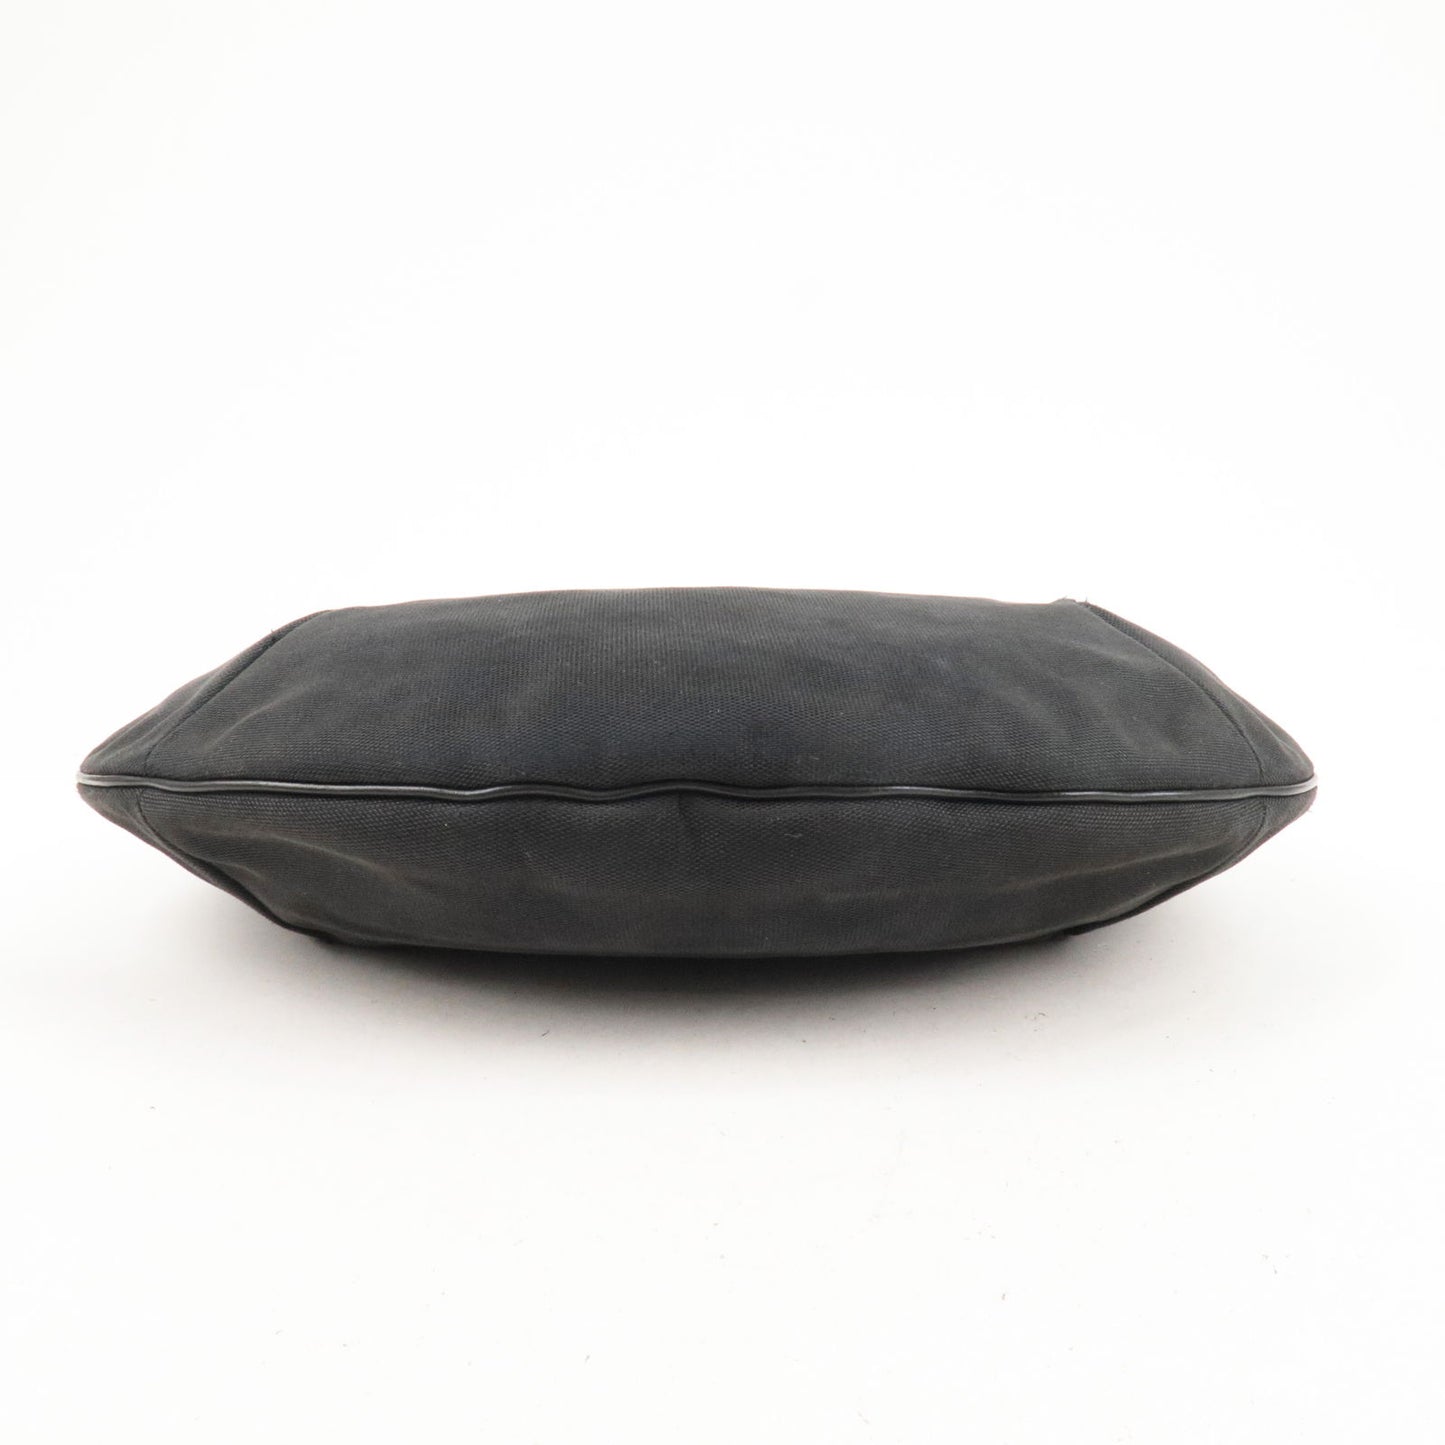 GUCCI Hobo Canvas Leather Bag Shoulder Bag Black 106663